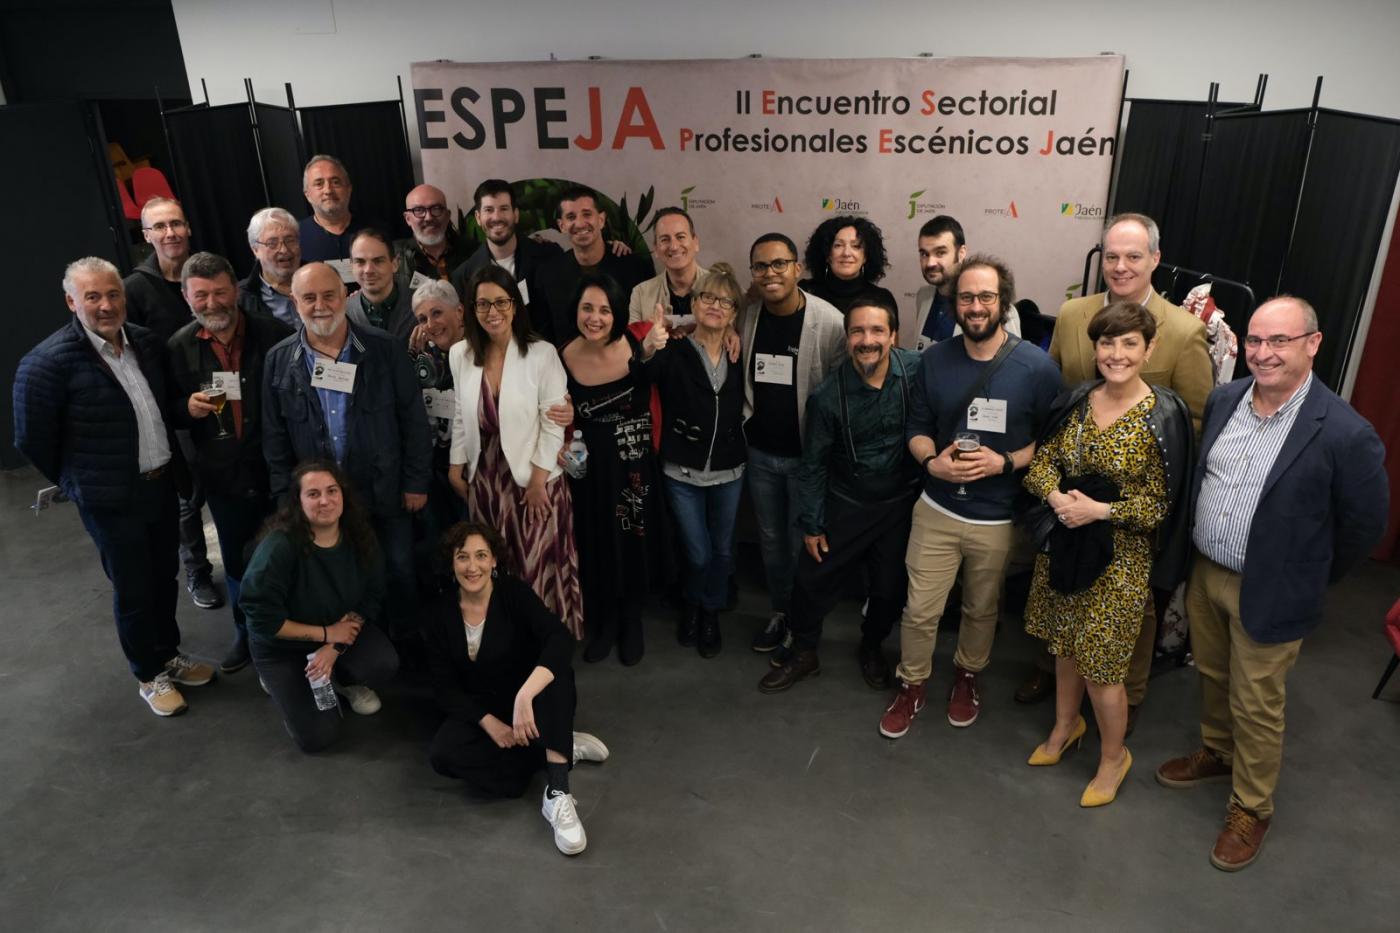 Los profesionales de las artes escénicas se dan cita en Jaén